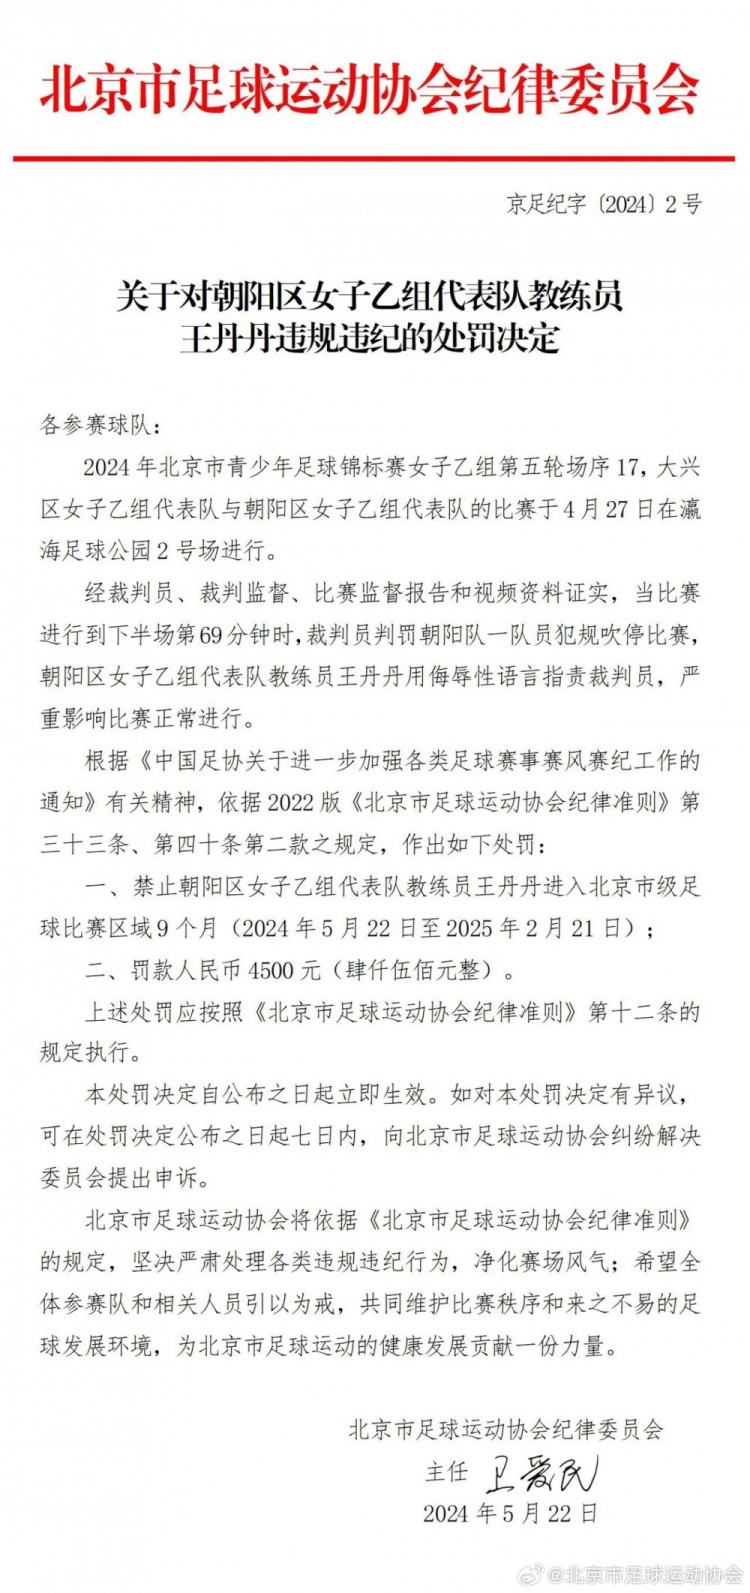 女足教练王丹丹侮辱性语言指责裁判被北京足协禁足9月&罚款4.5千